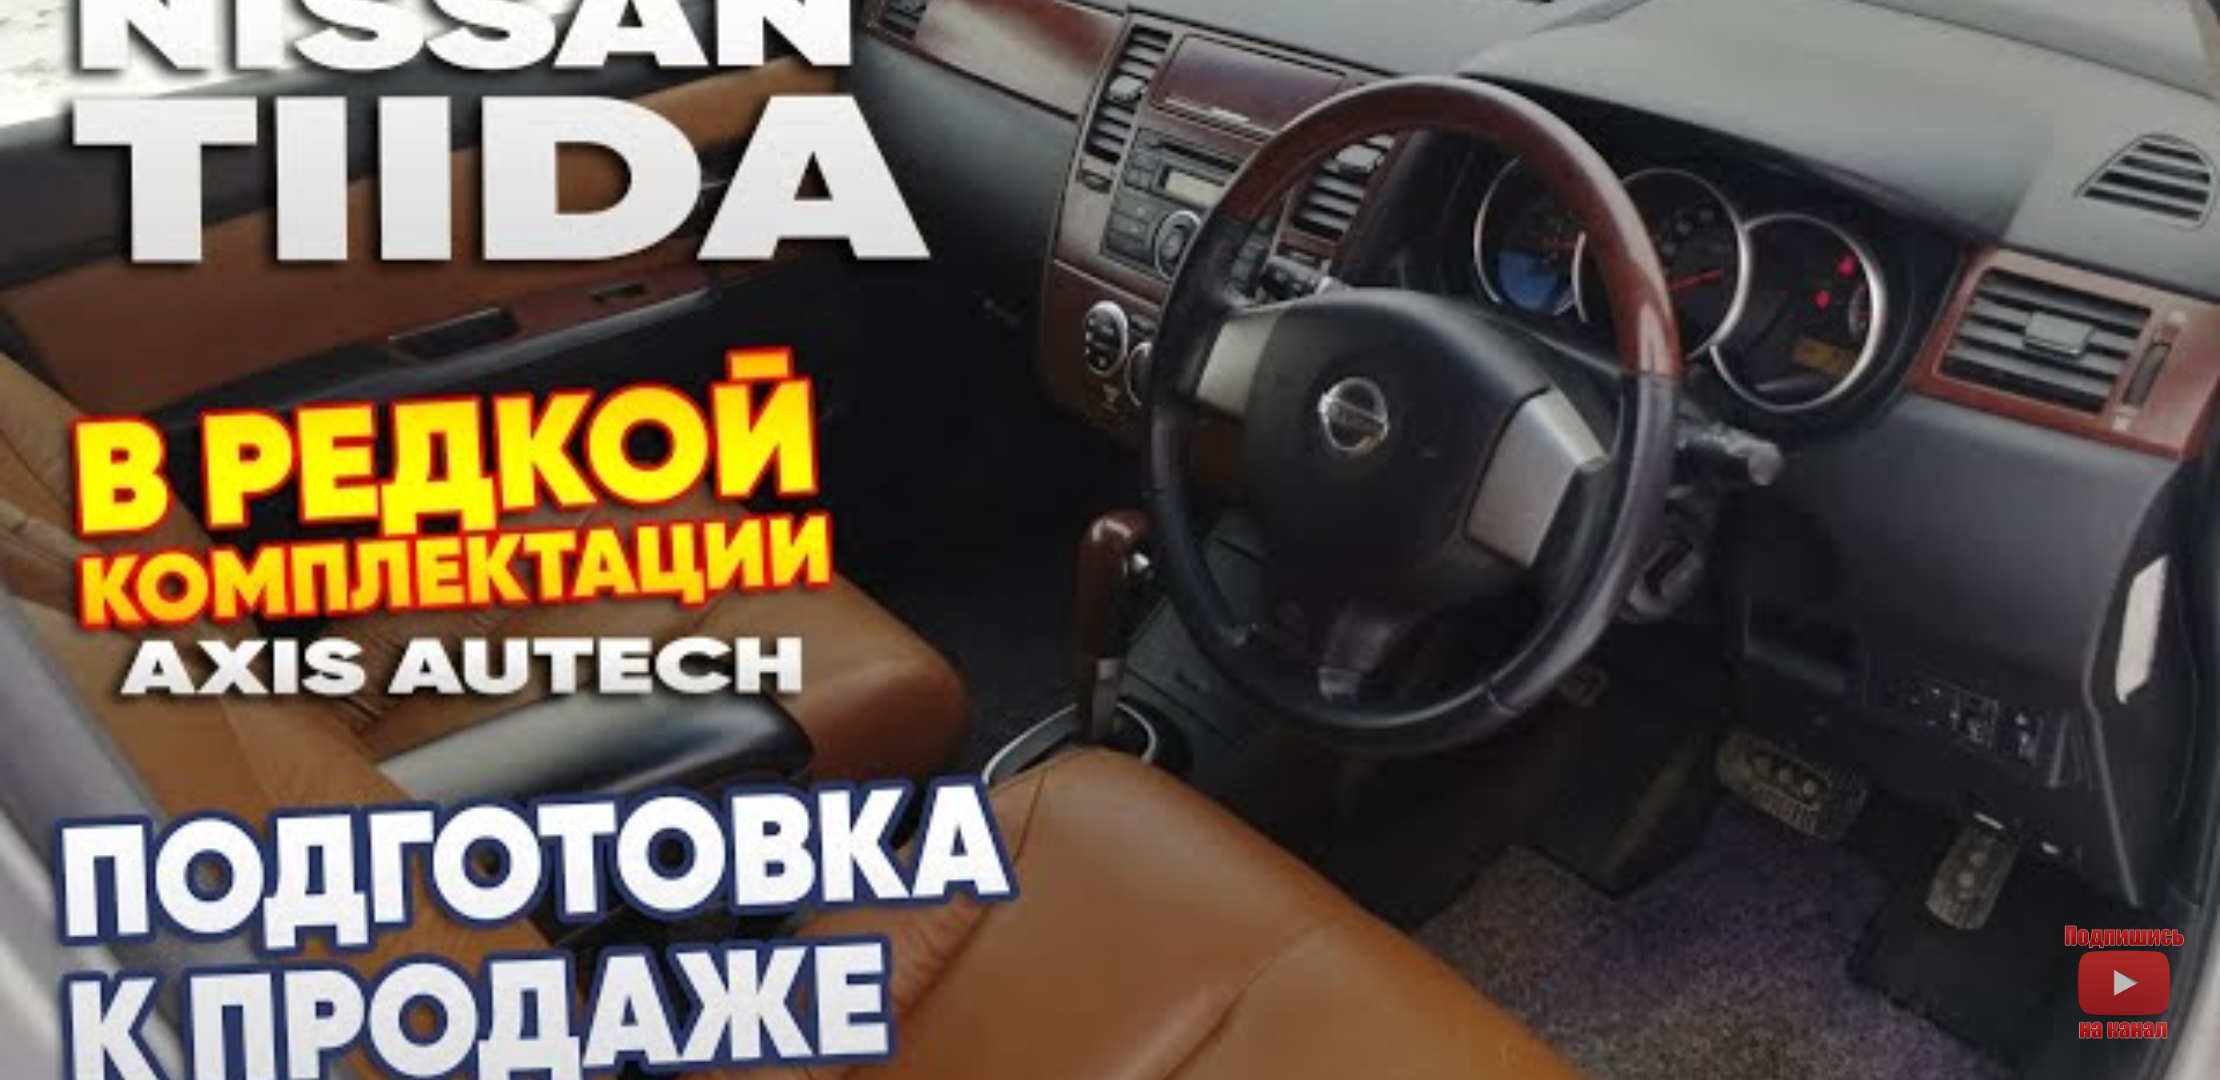 Анонс видео-теста Nissan tiida в редкой комплектации. Подготовка к продаже. Перекупы